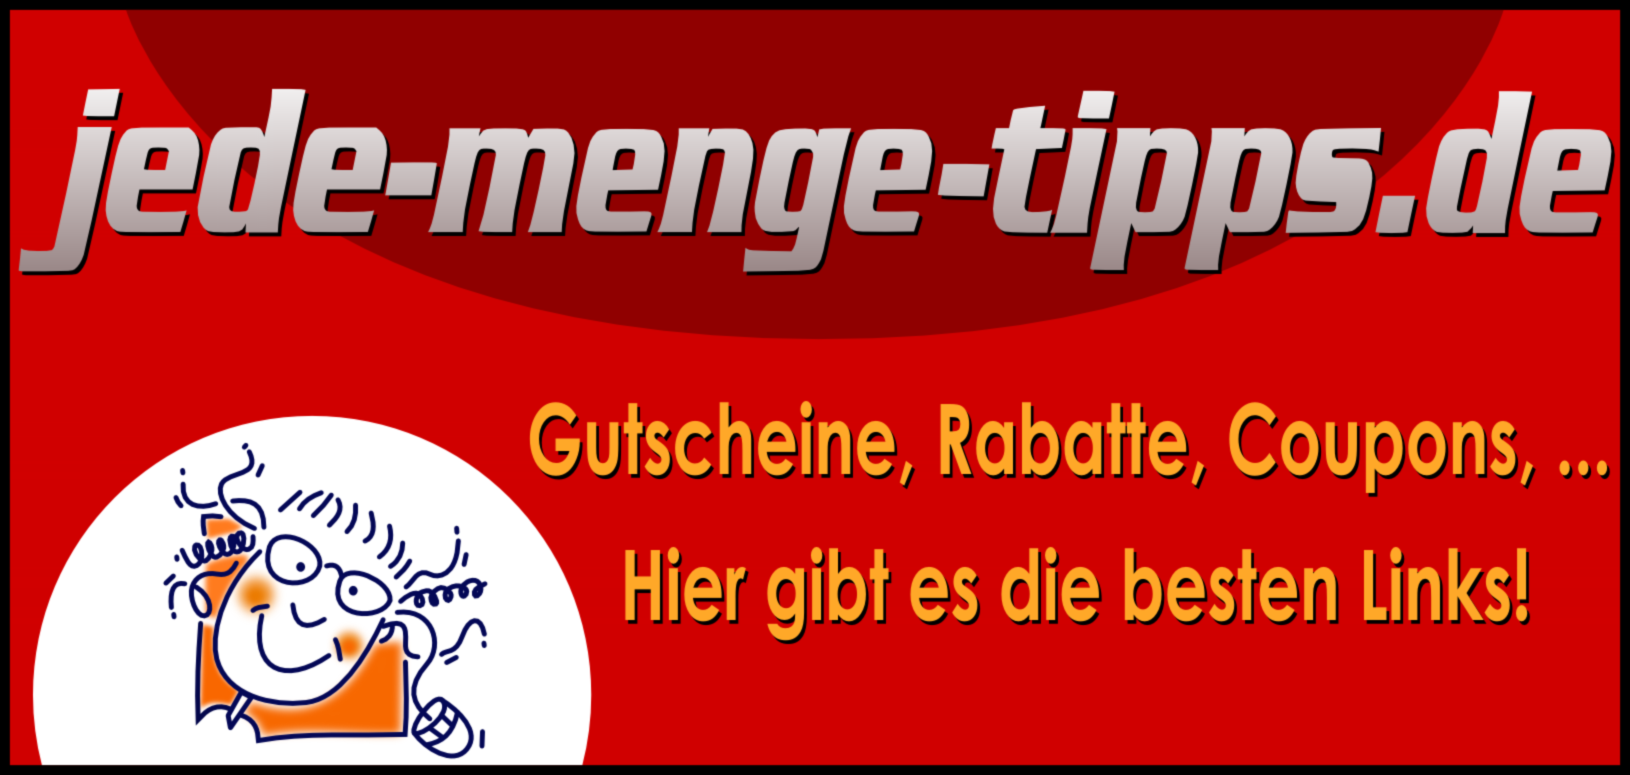 www.jede-menge-tipps.de